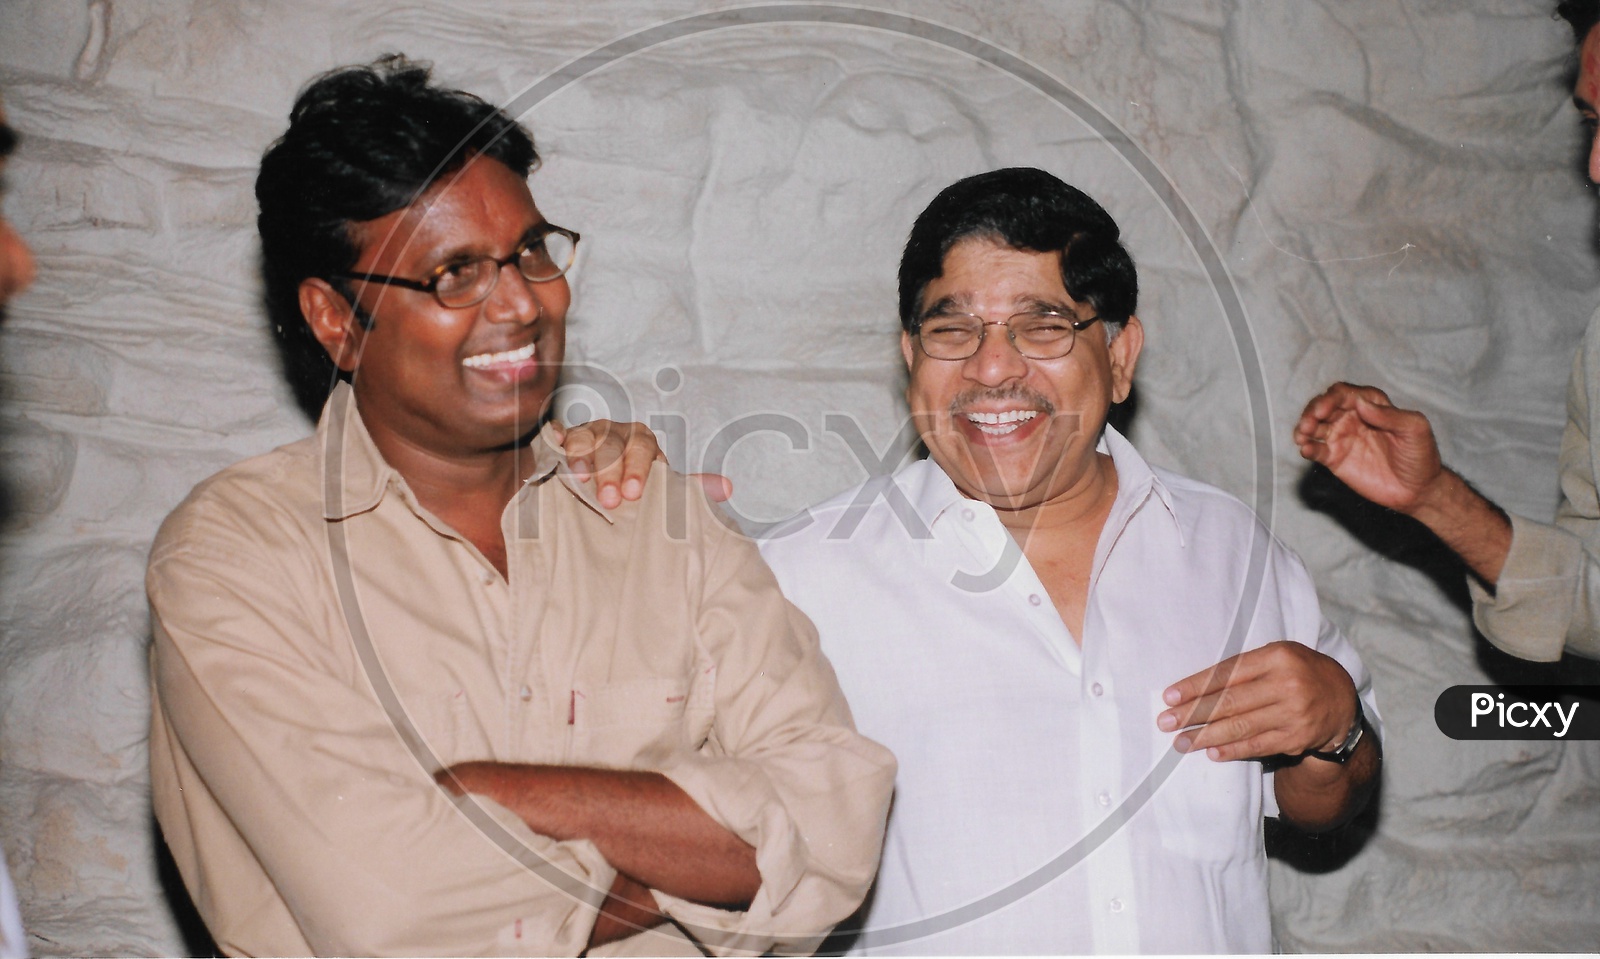 Telugu Film Producer Allu Aravind with Director Gunasekhar